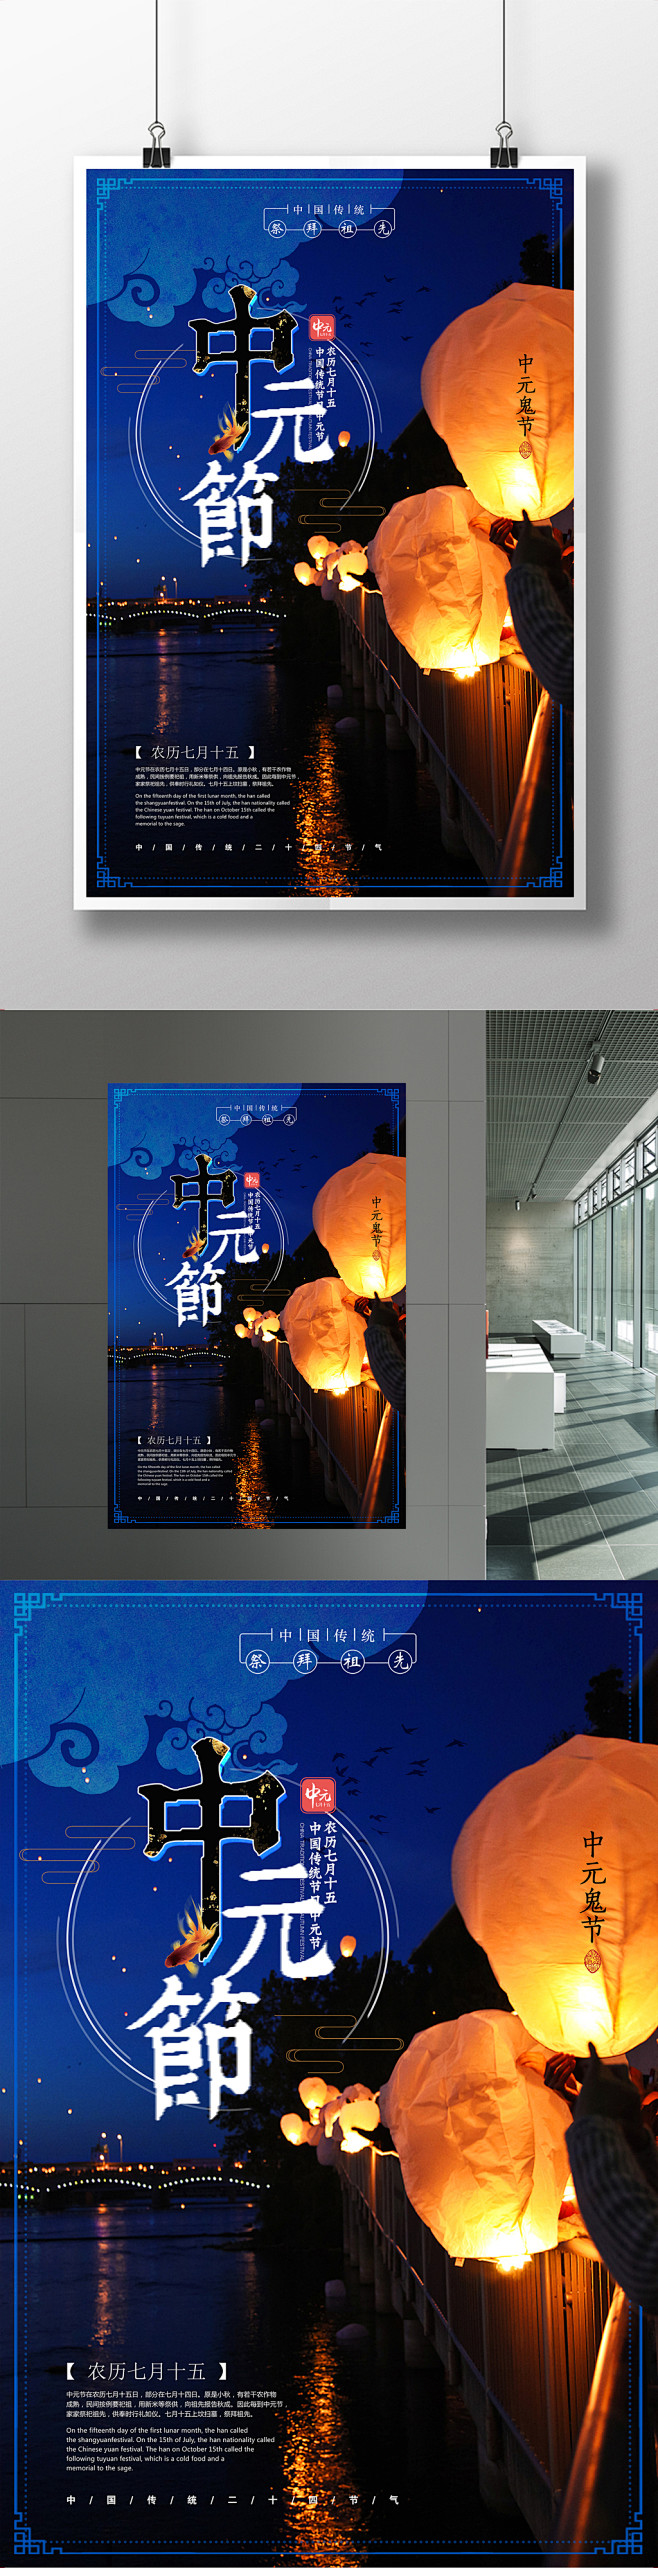 中国风古典中元节鬼节创意海报设计